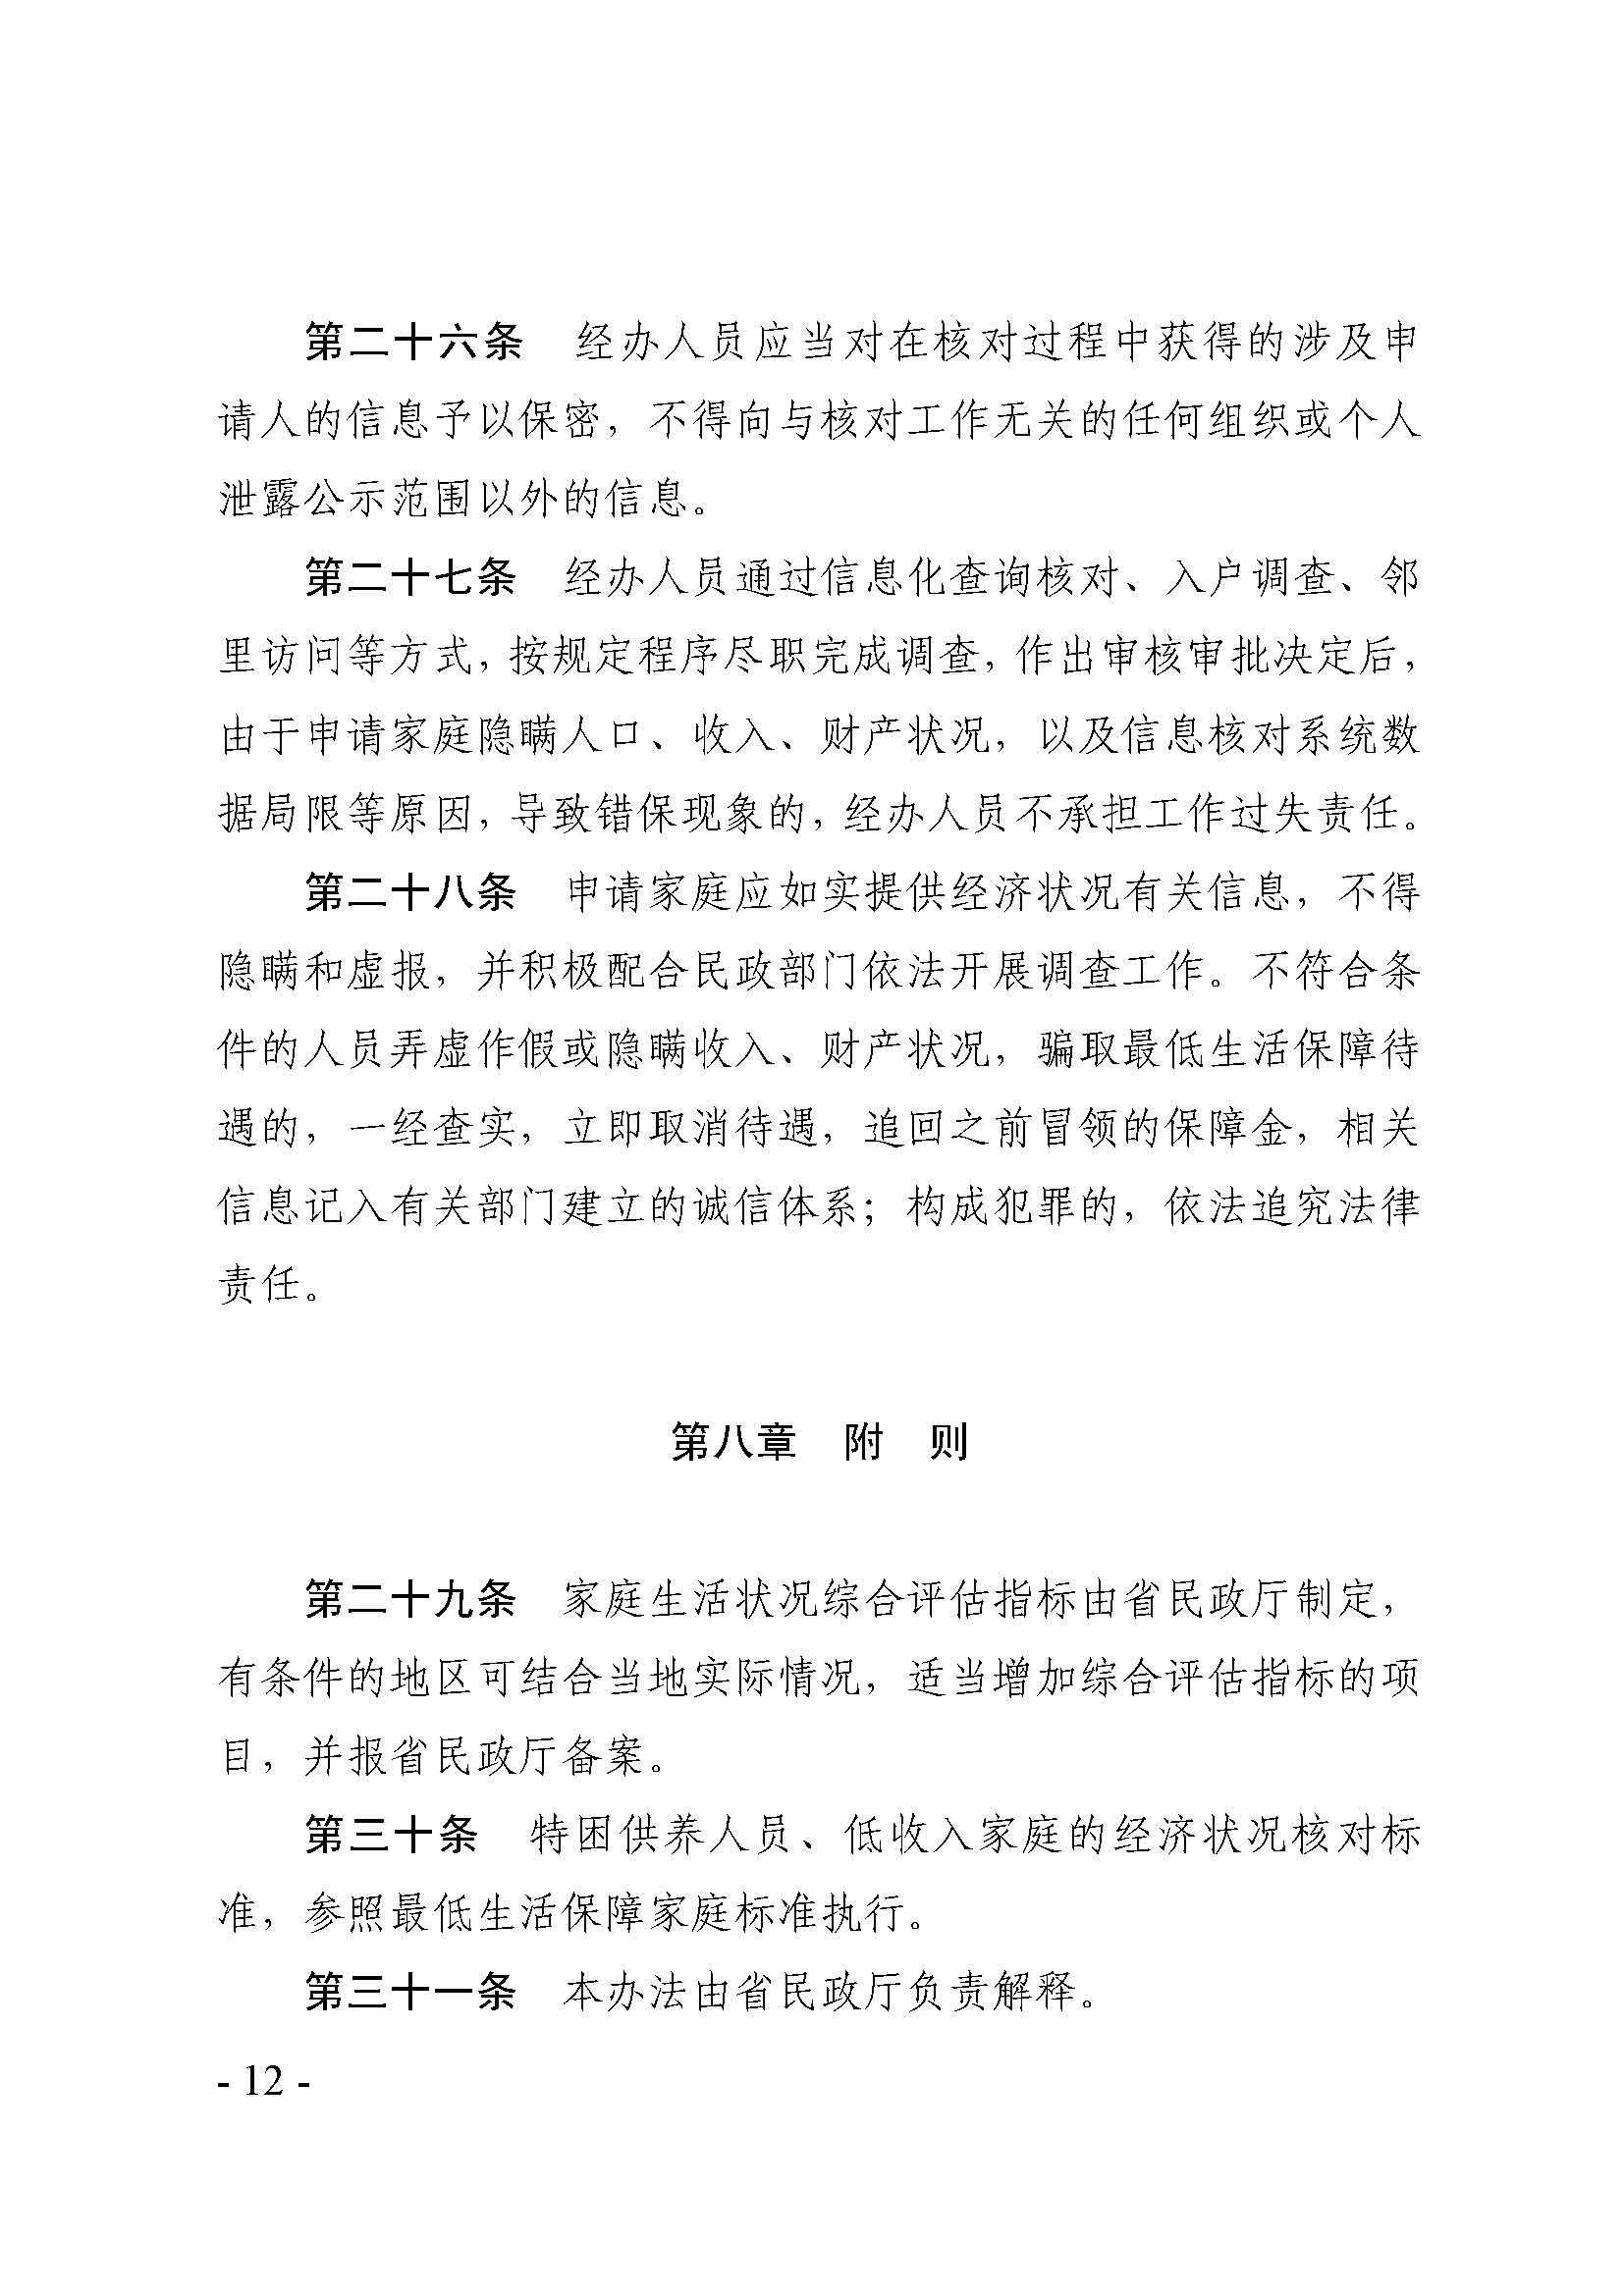 广东省最低生活保障家庭经济状况核对和生活状况评估认定办法_页面_12.jpg